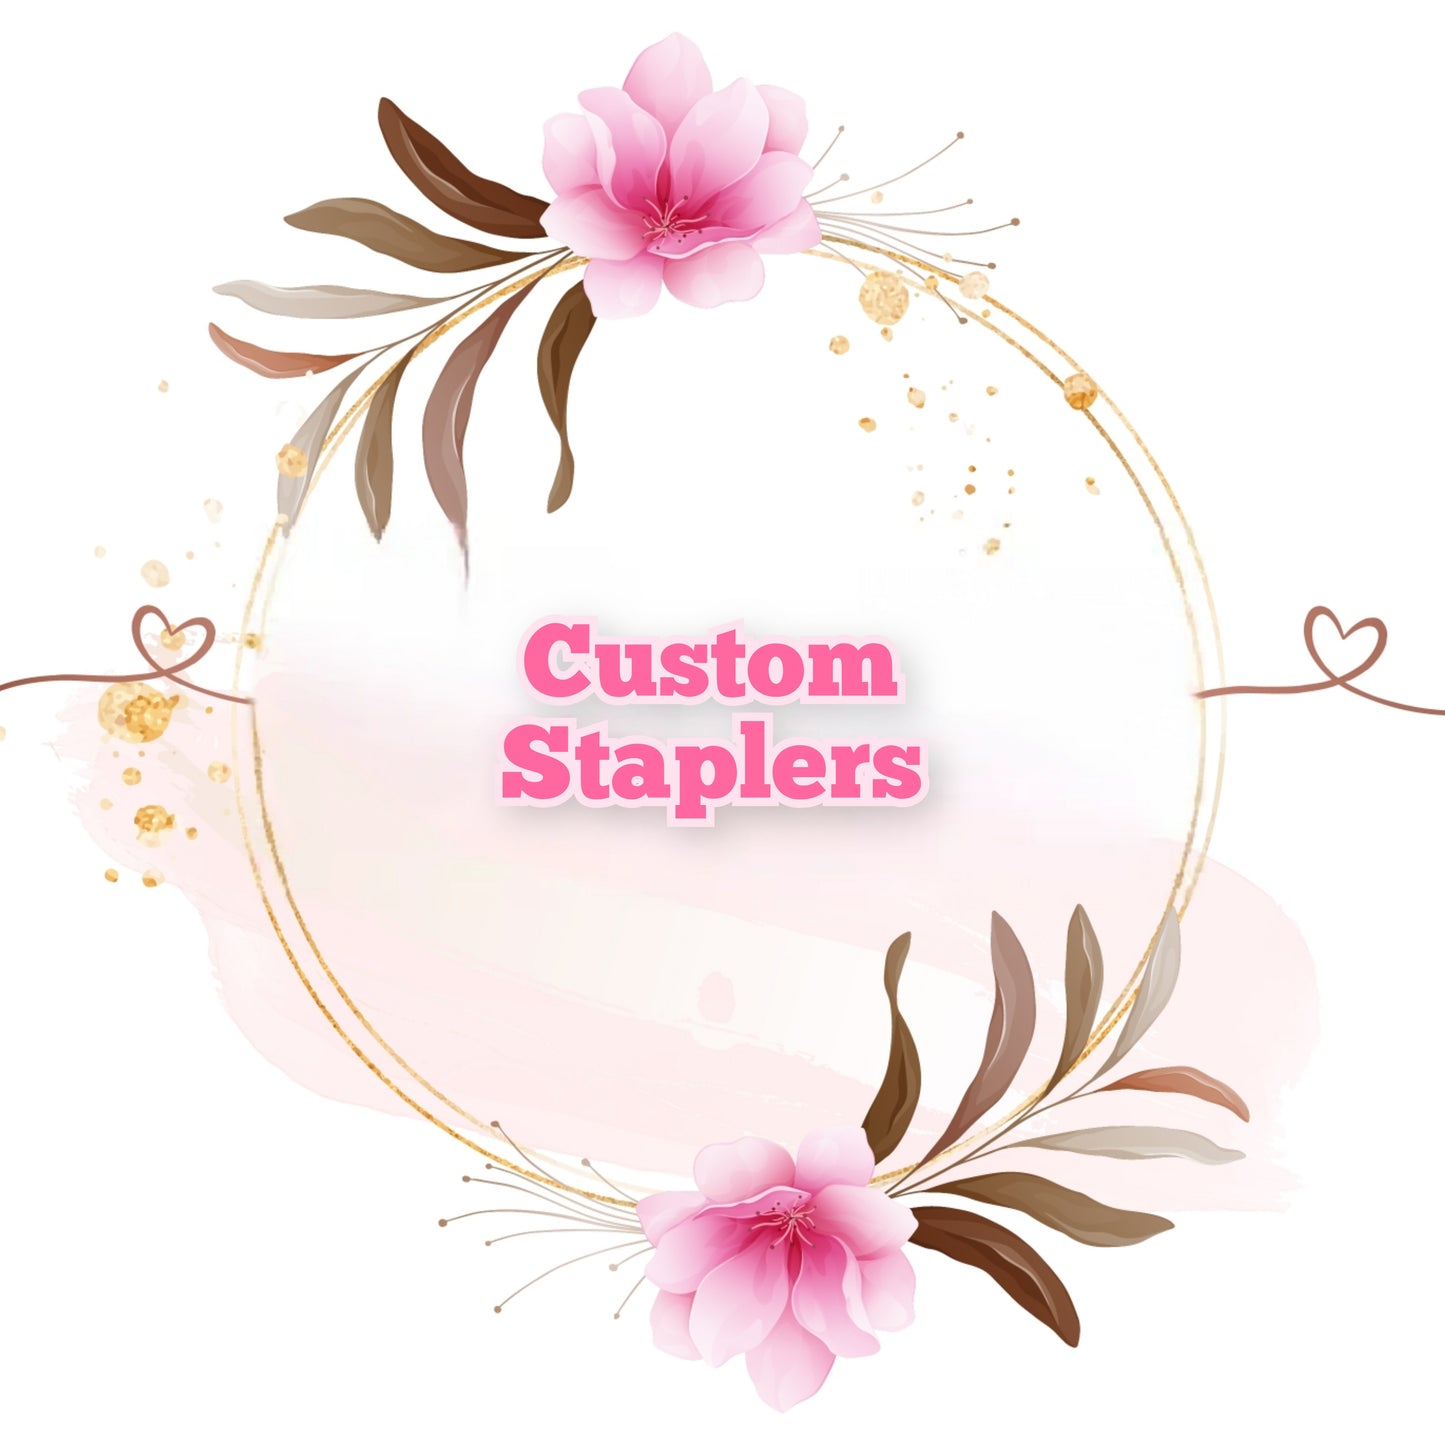 Custom Staplers